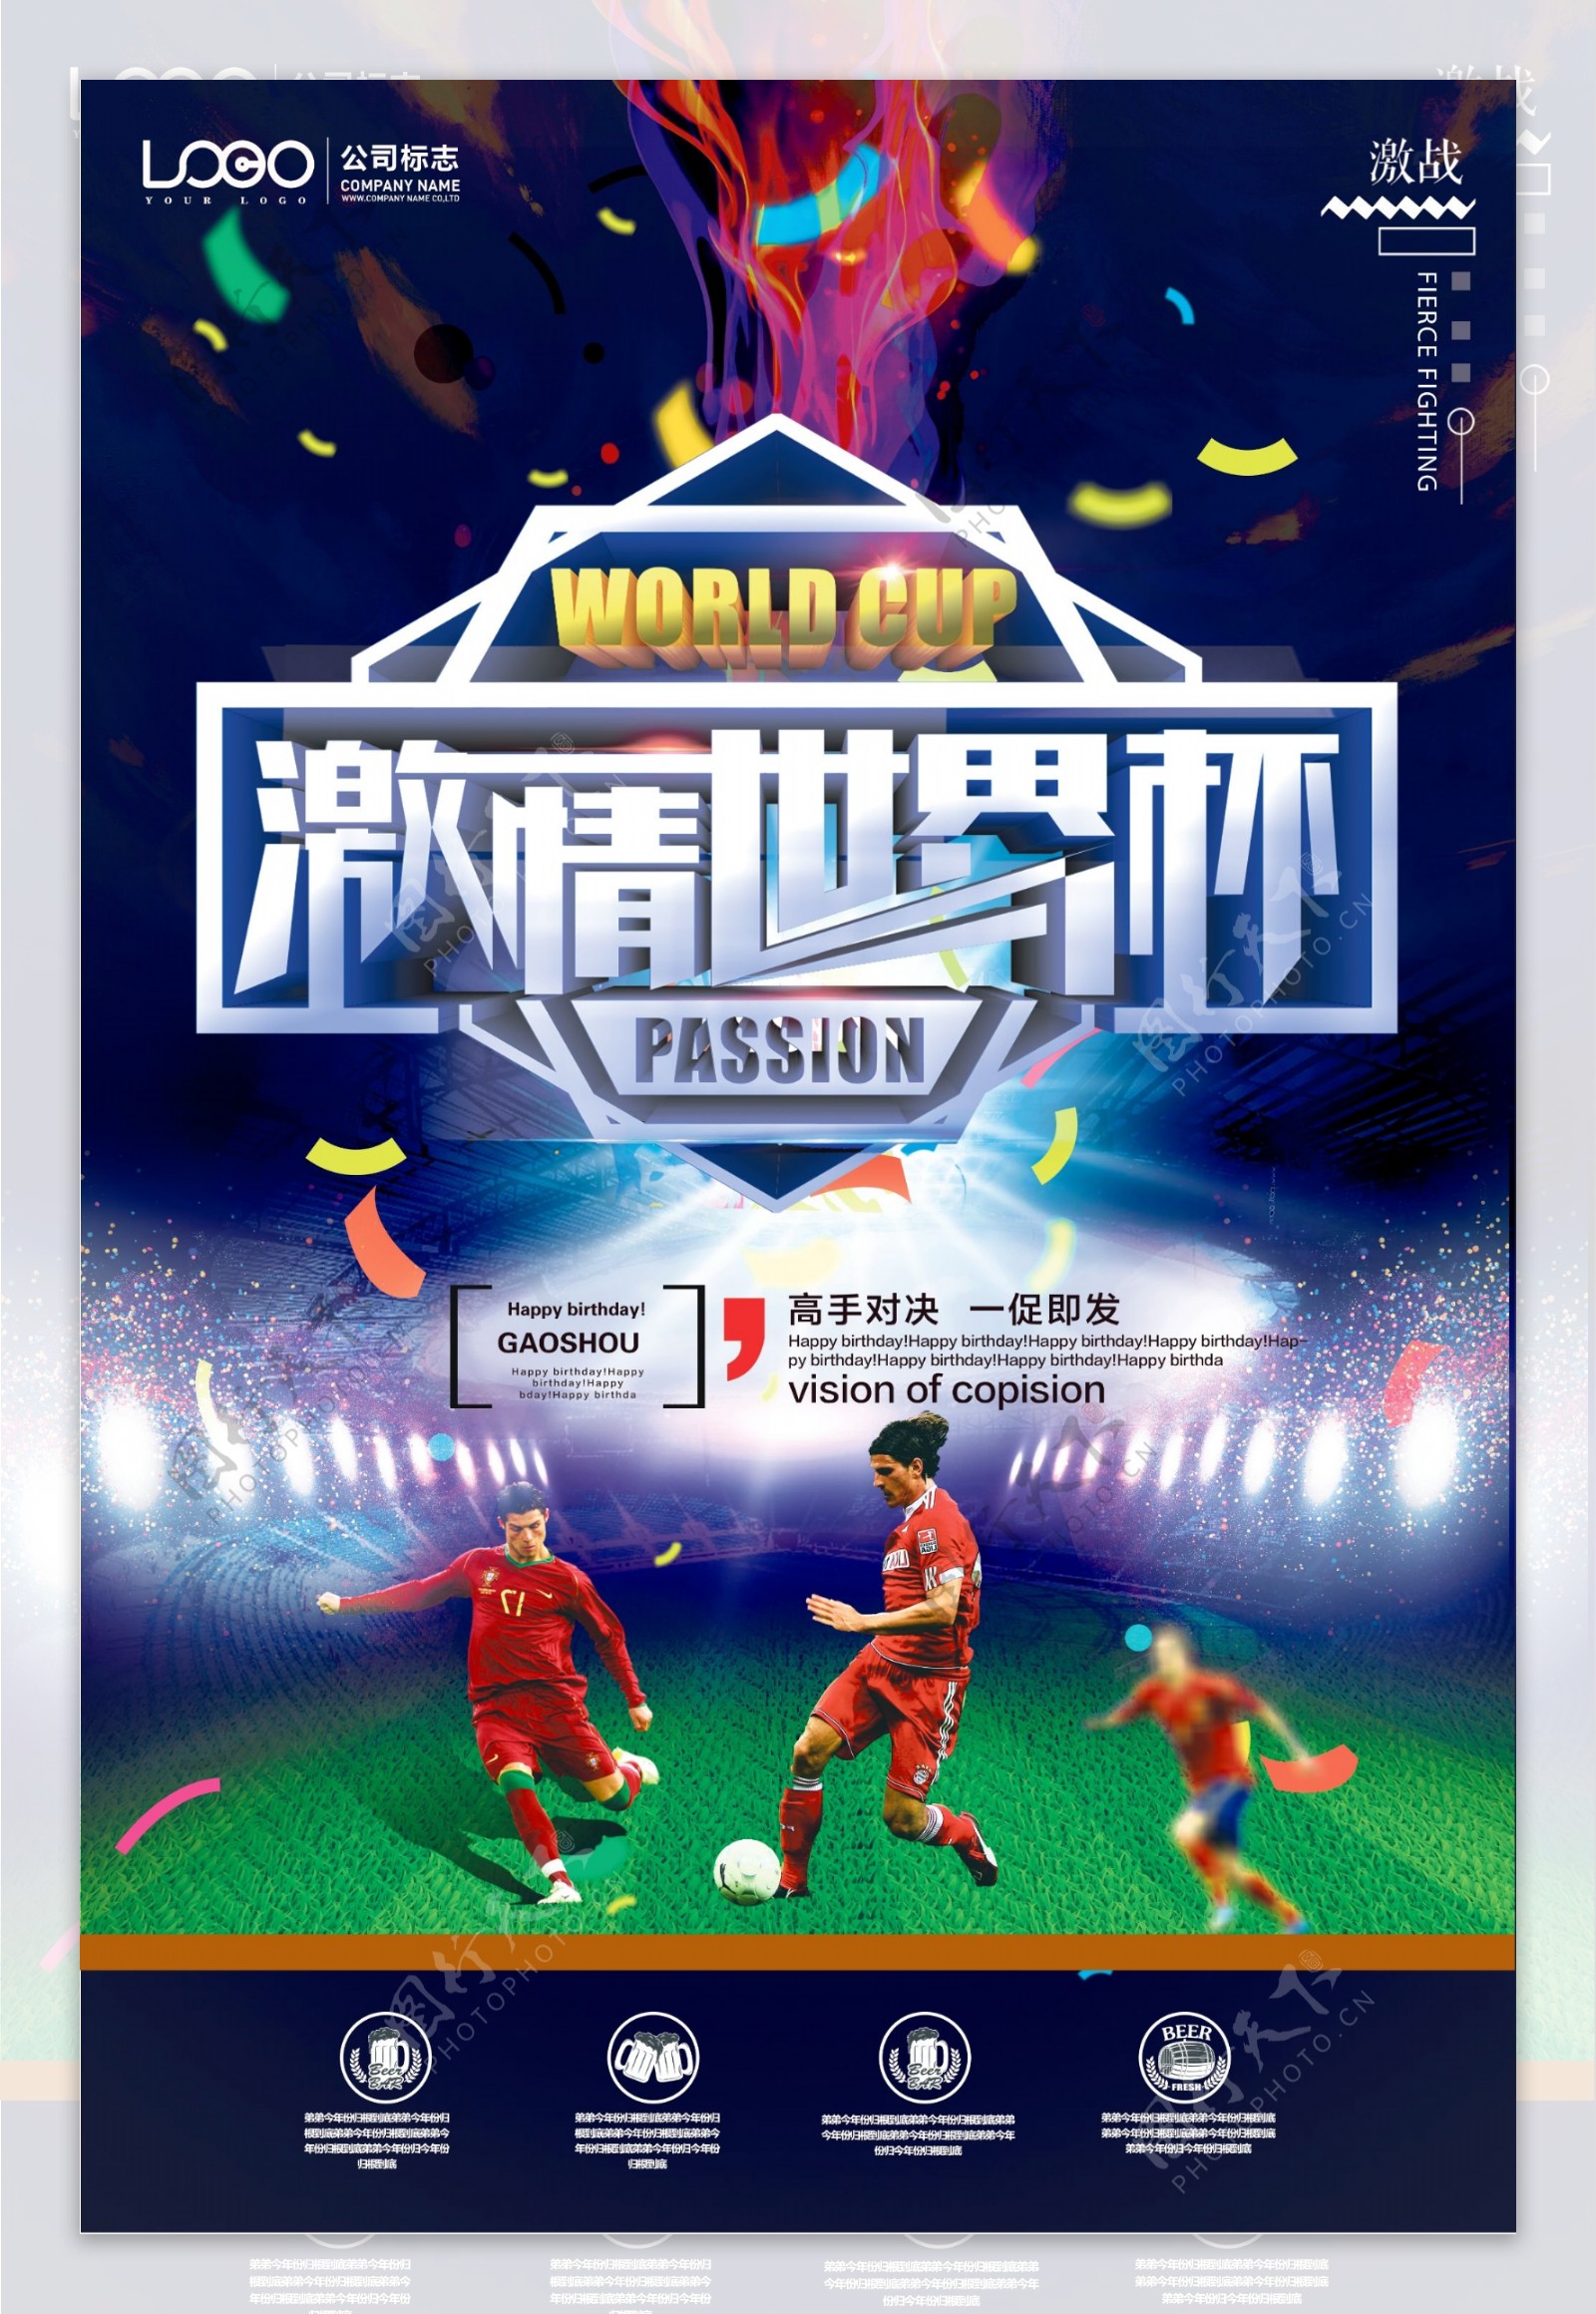 蓝色大气创意激情世界杯海报设计